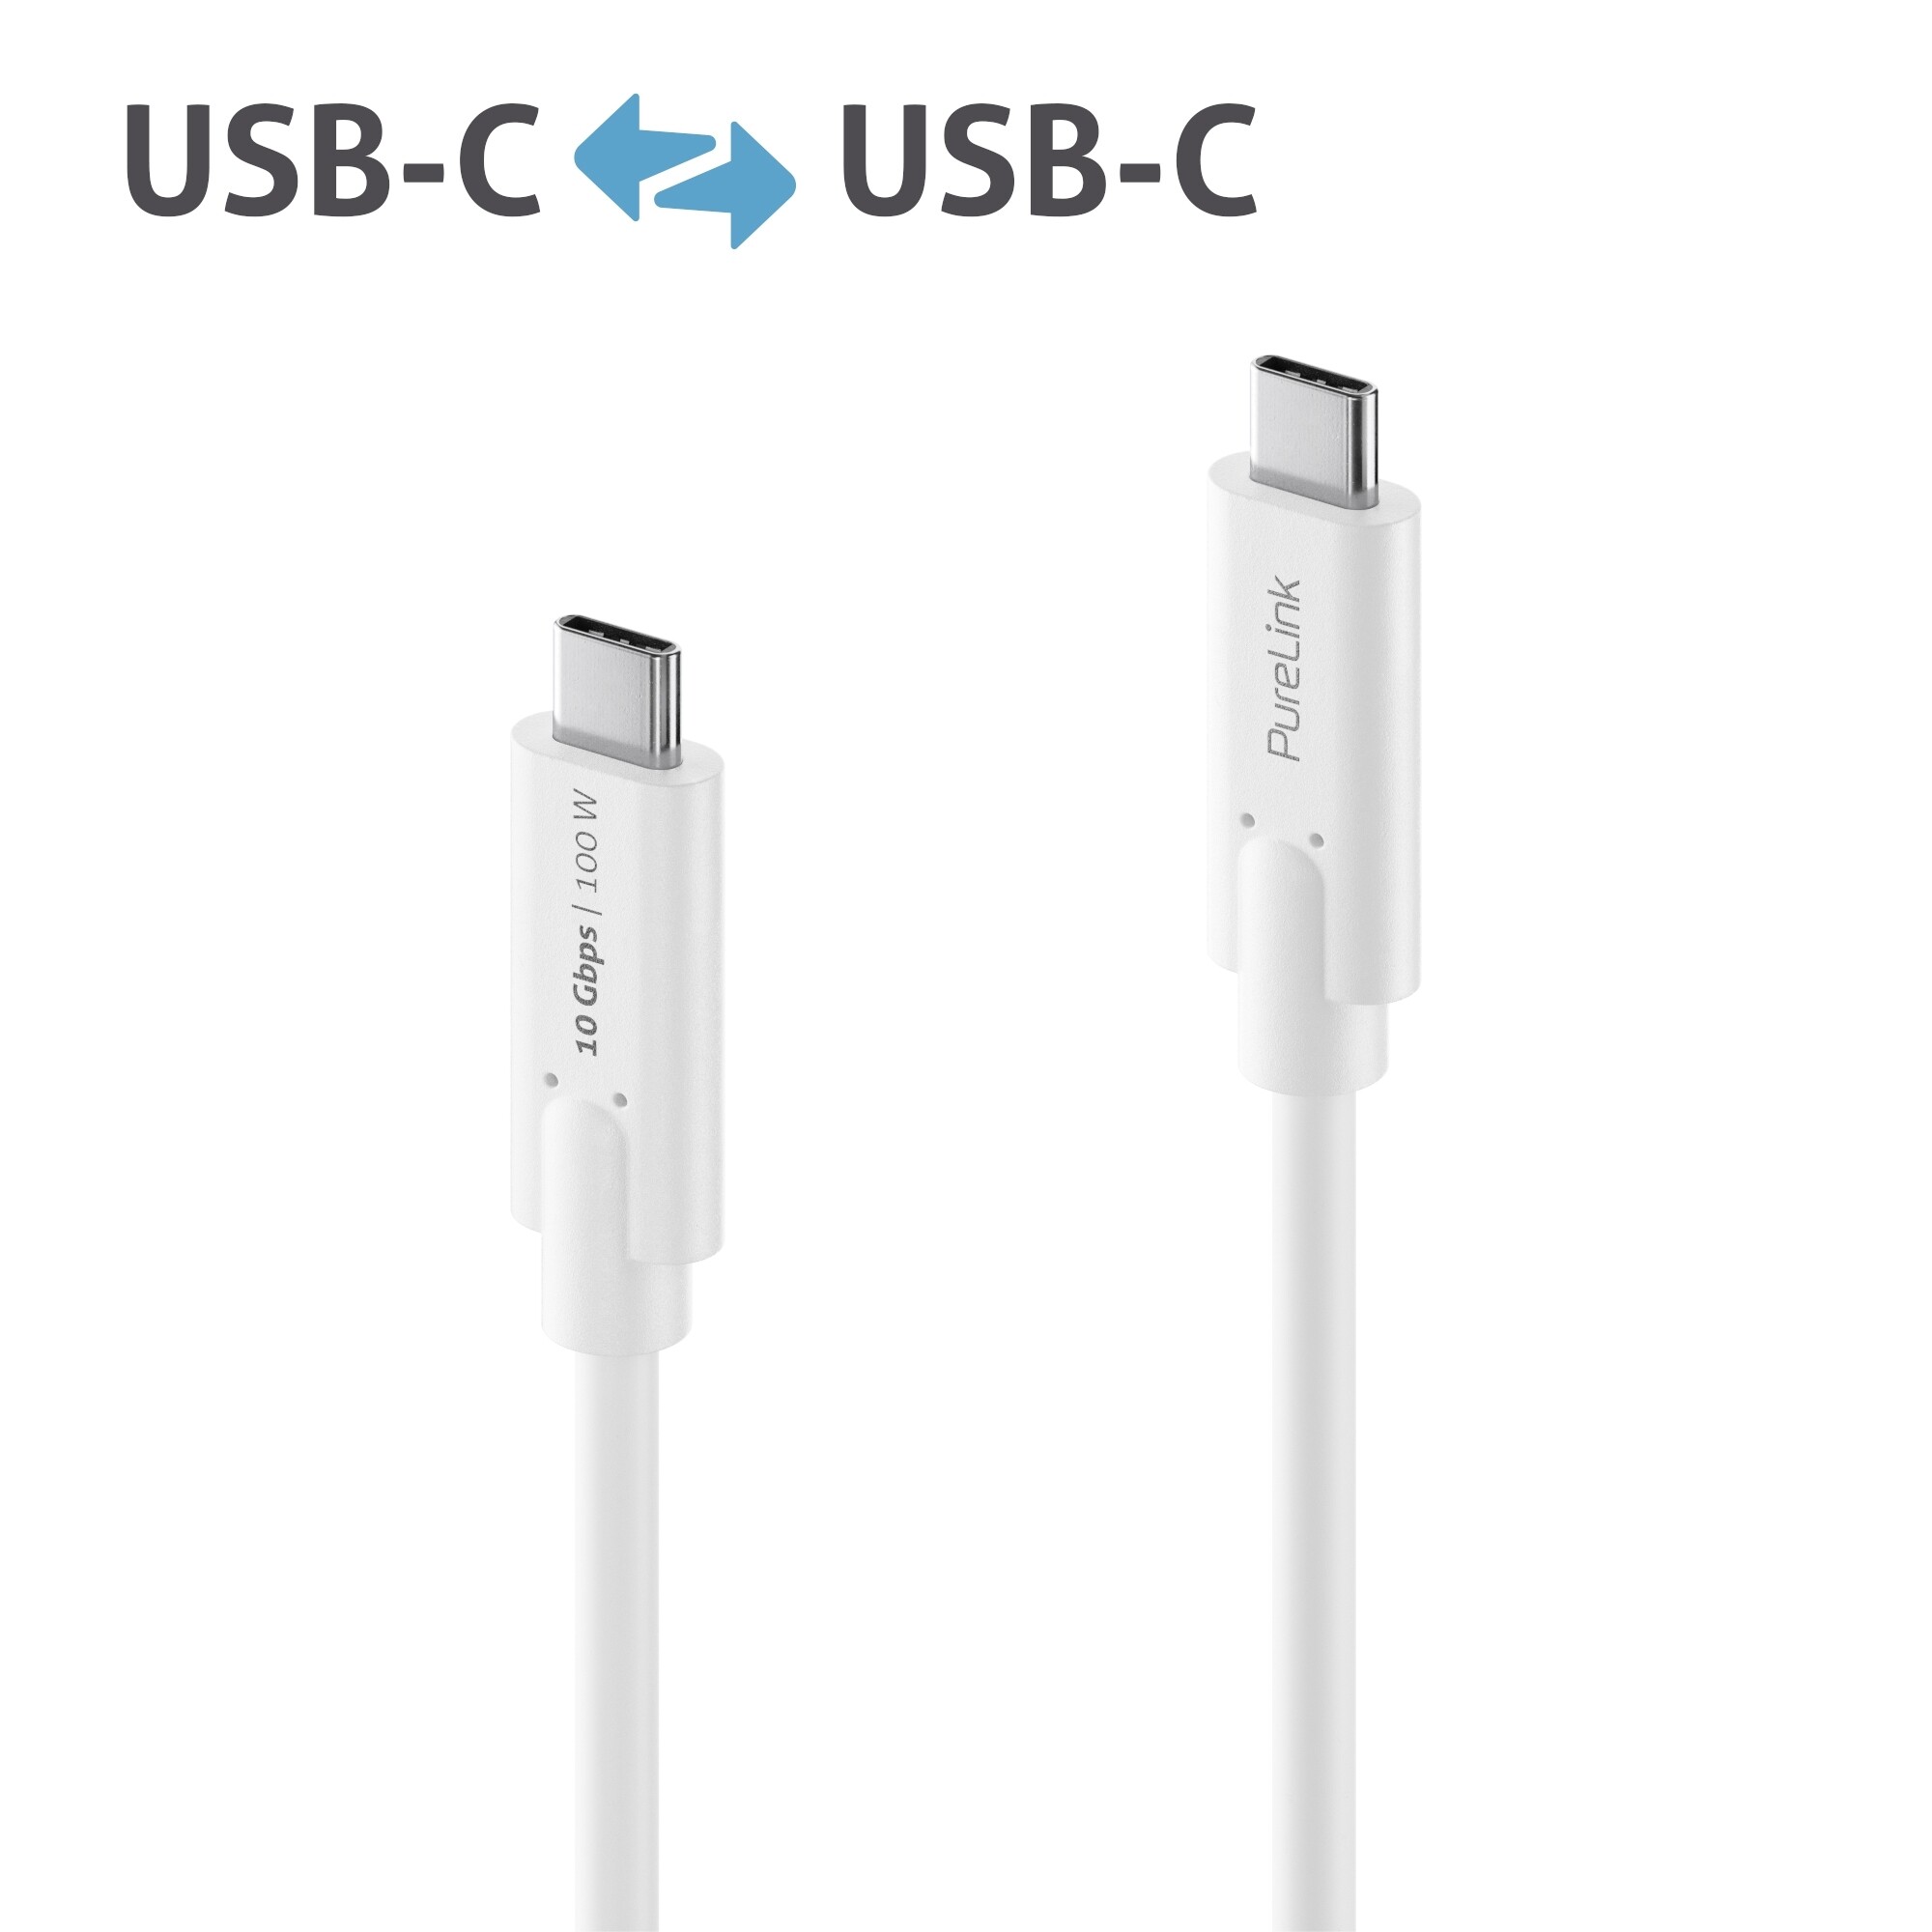 Purelink-IS2510-015-USB-C-auf-USB-C-Gen-2-Kabel-1-5m-weiss